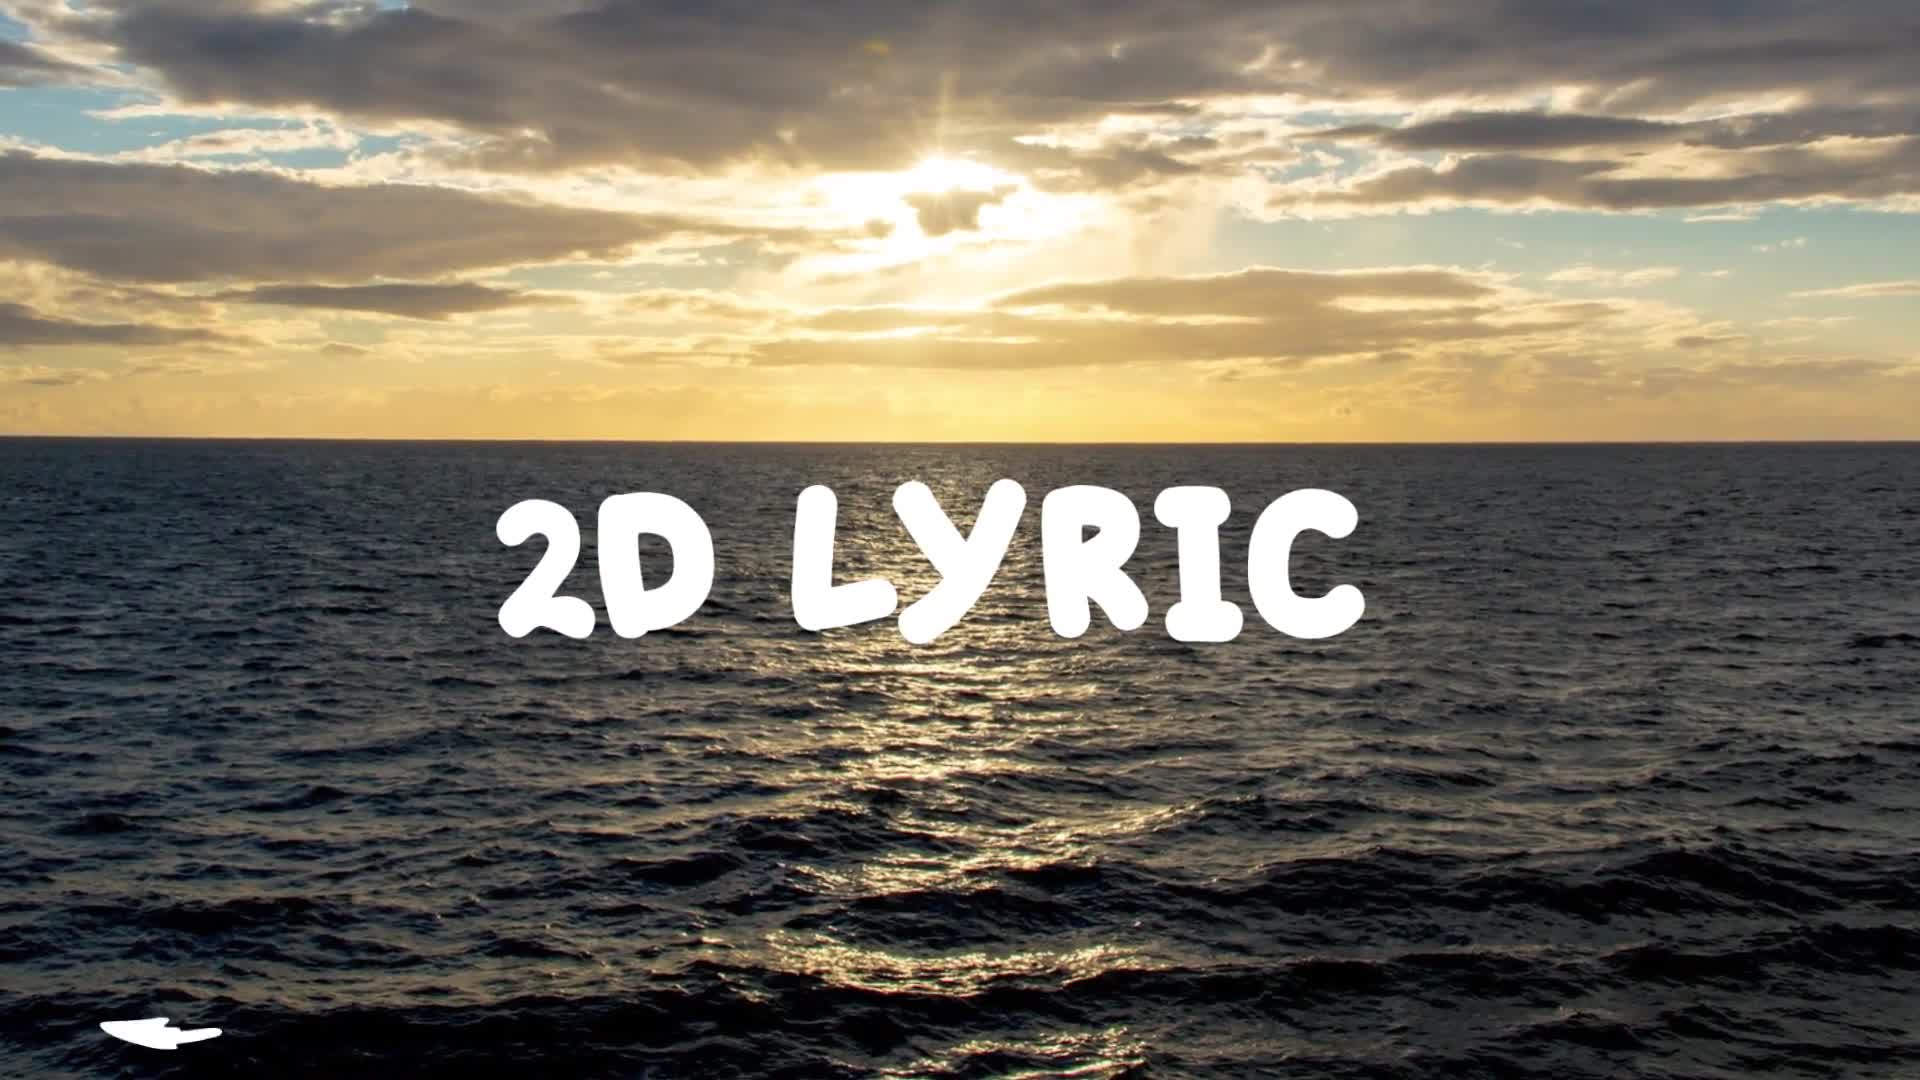 2d Lyric Titles | Premiere Pro MOGRT Videohive 23758523 Premiere Pro Image 1